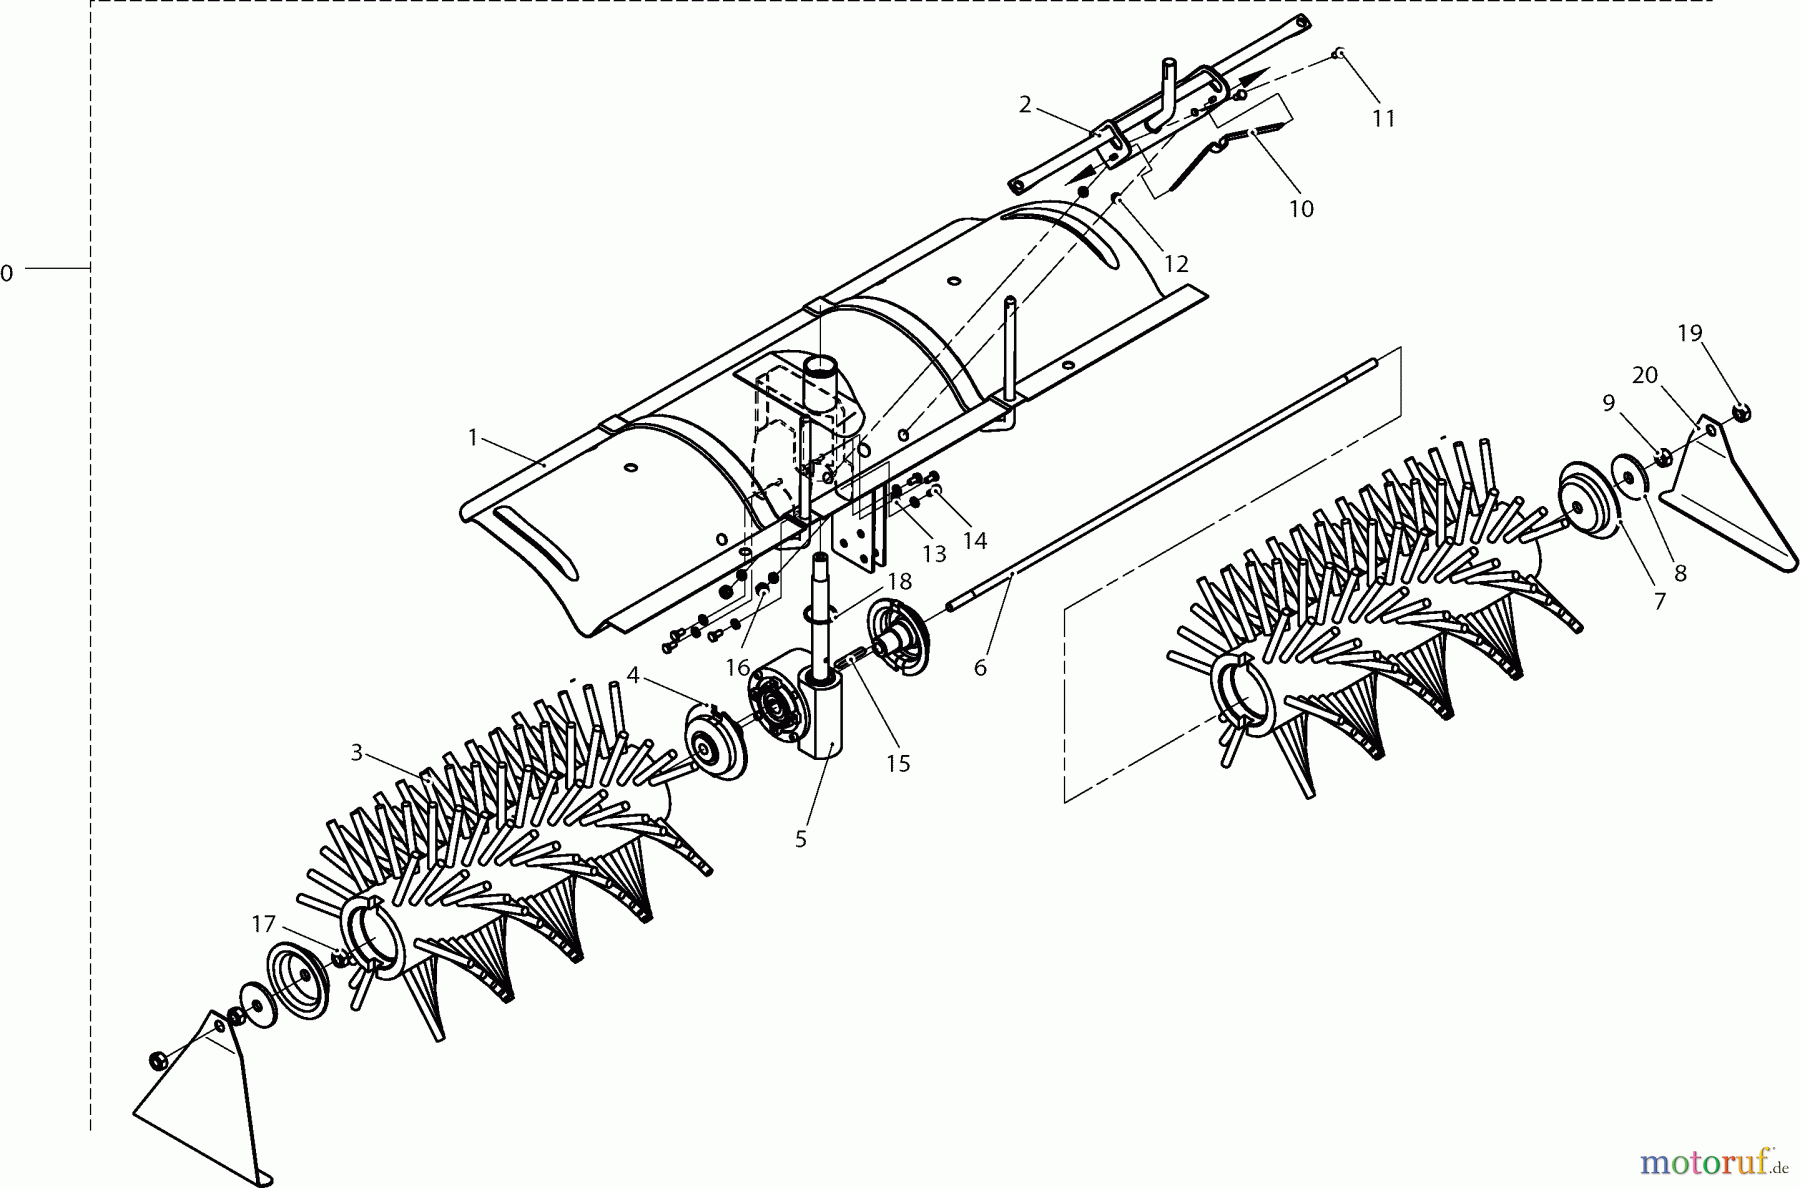  Dolmar Rasentraktoren Zubehör RS-120, TA-250, TK-420, TK-520, TS-125 11  TK-420 - Kehrmaschine (Basiswechsler)